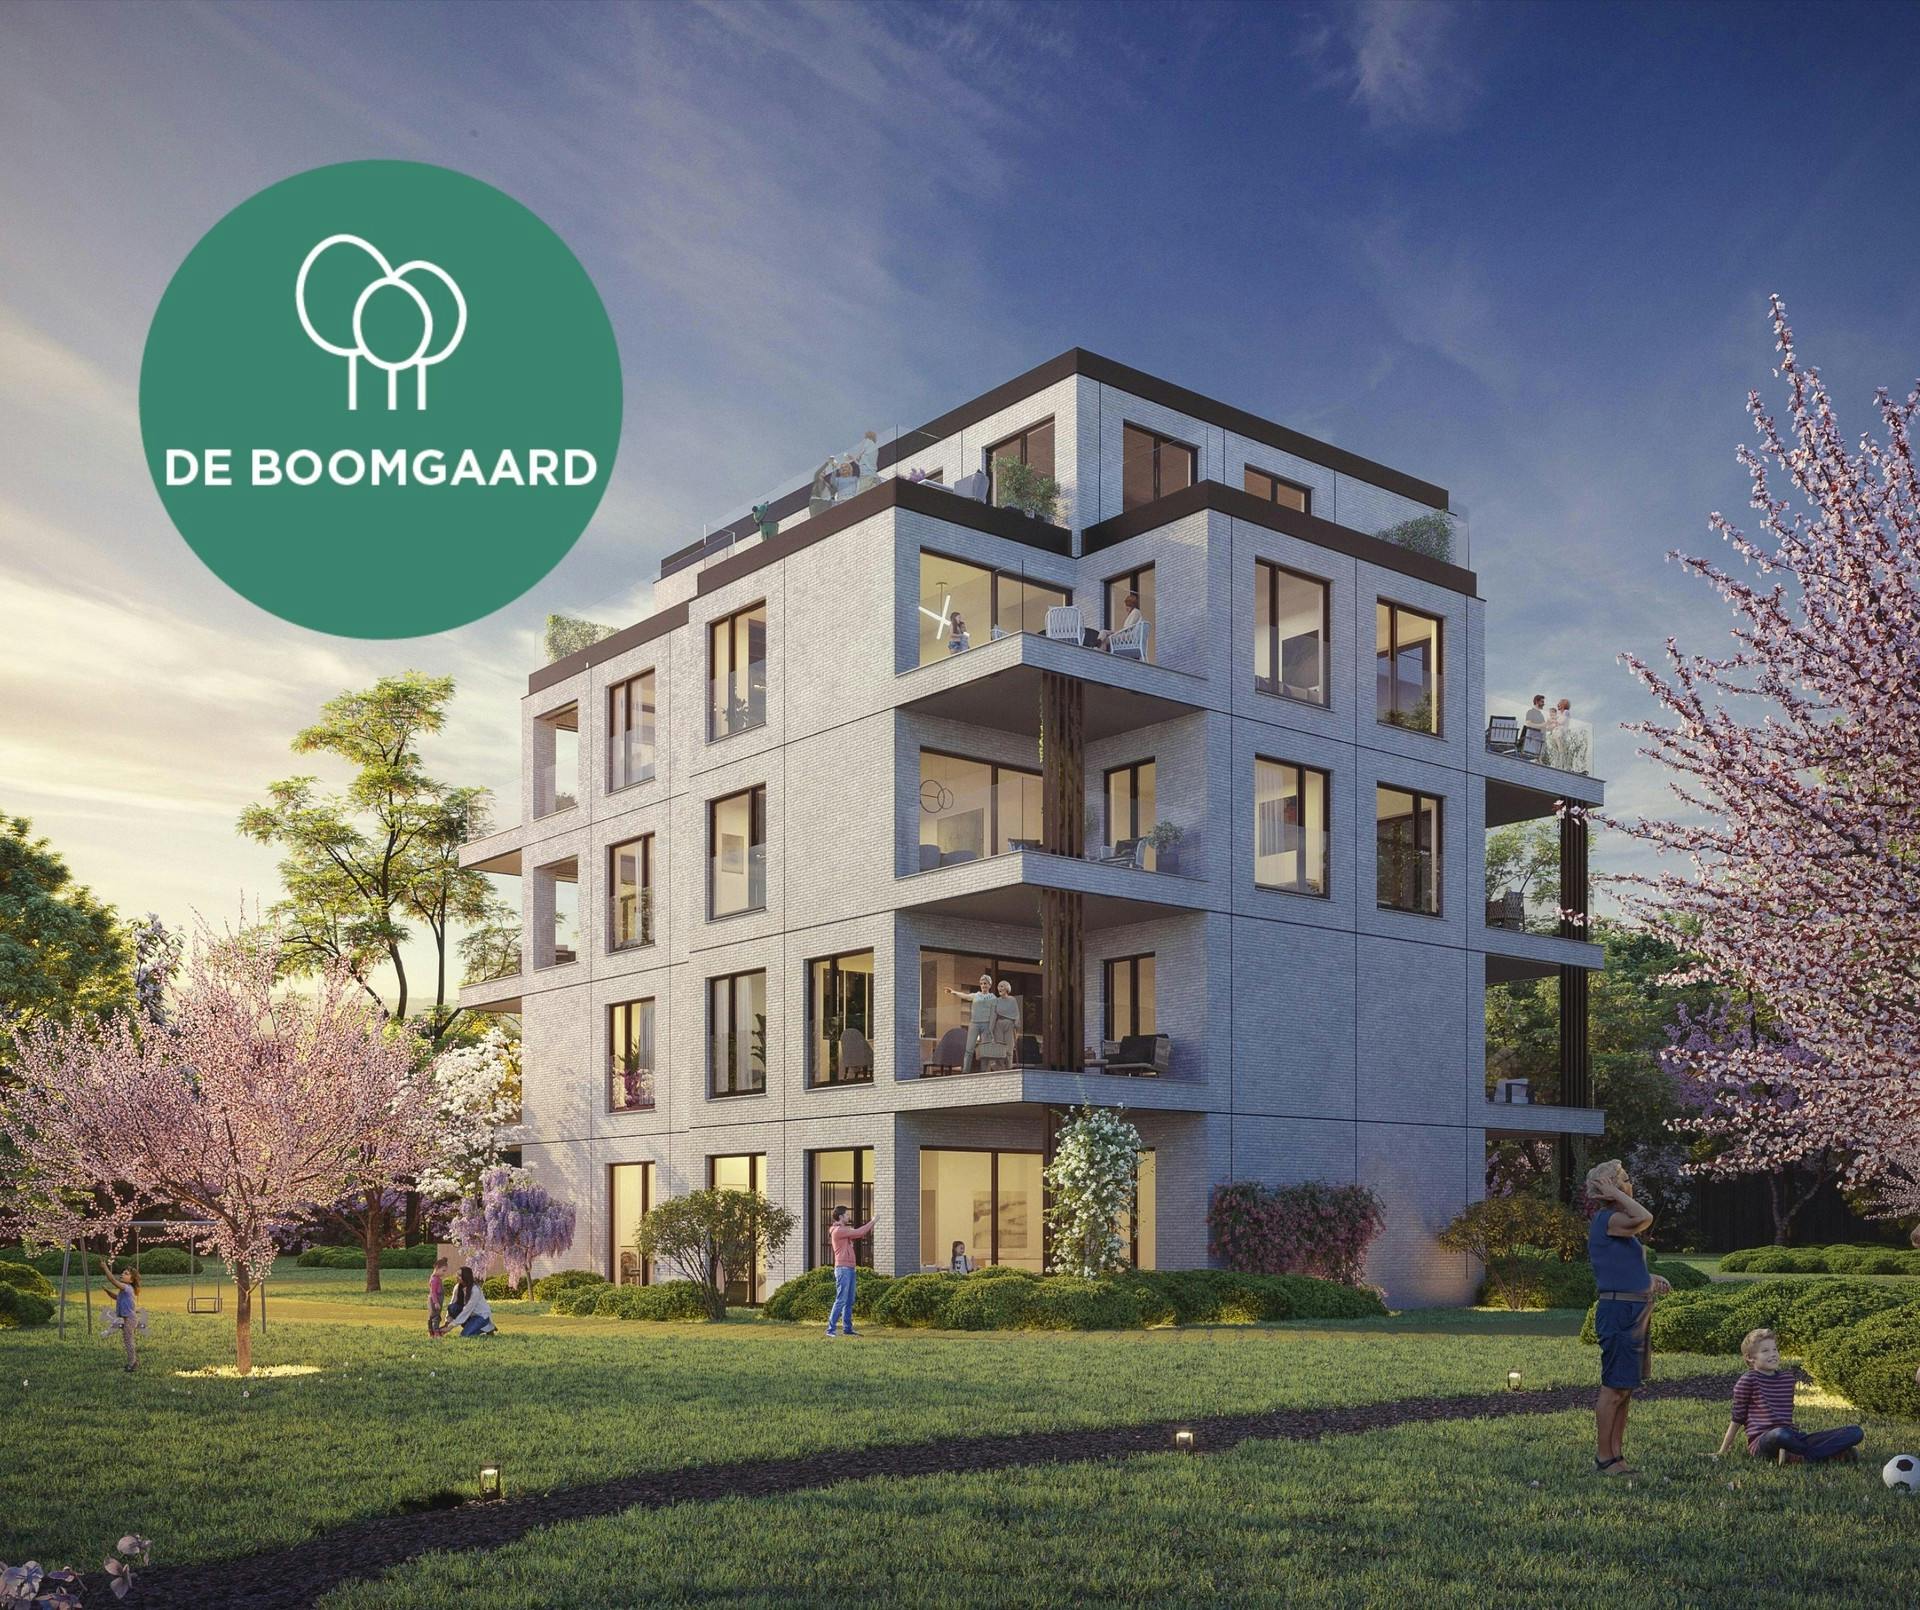 Residentie De Boomgaard - Energiezuinige en comfortabele appartementen nabij stadscentrum Hasselt